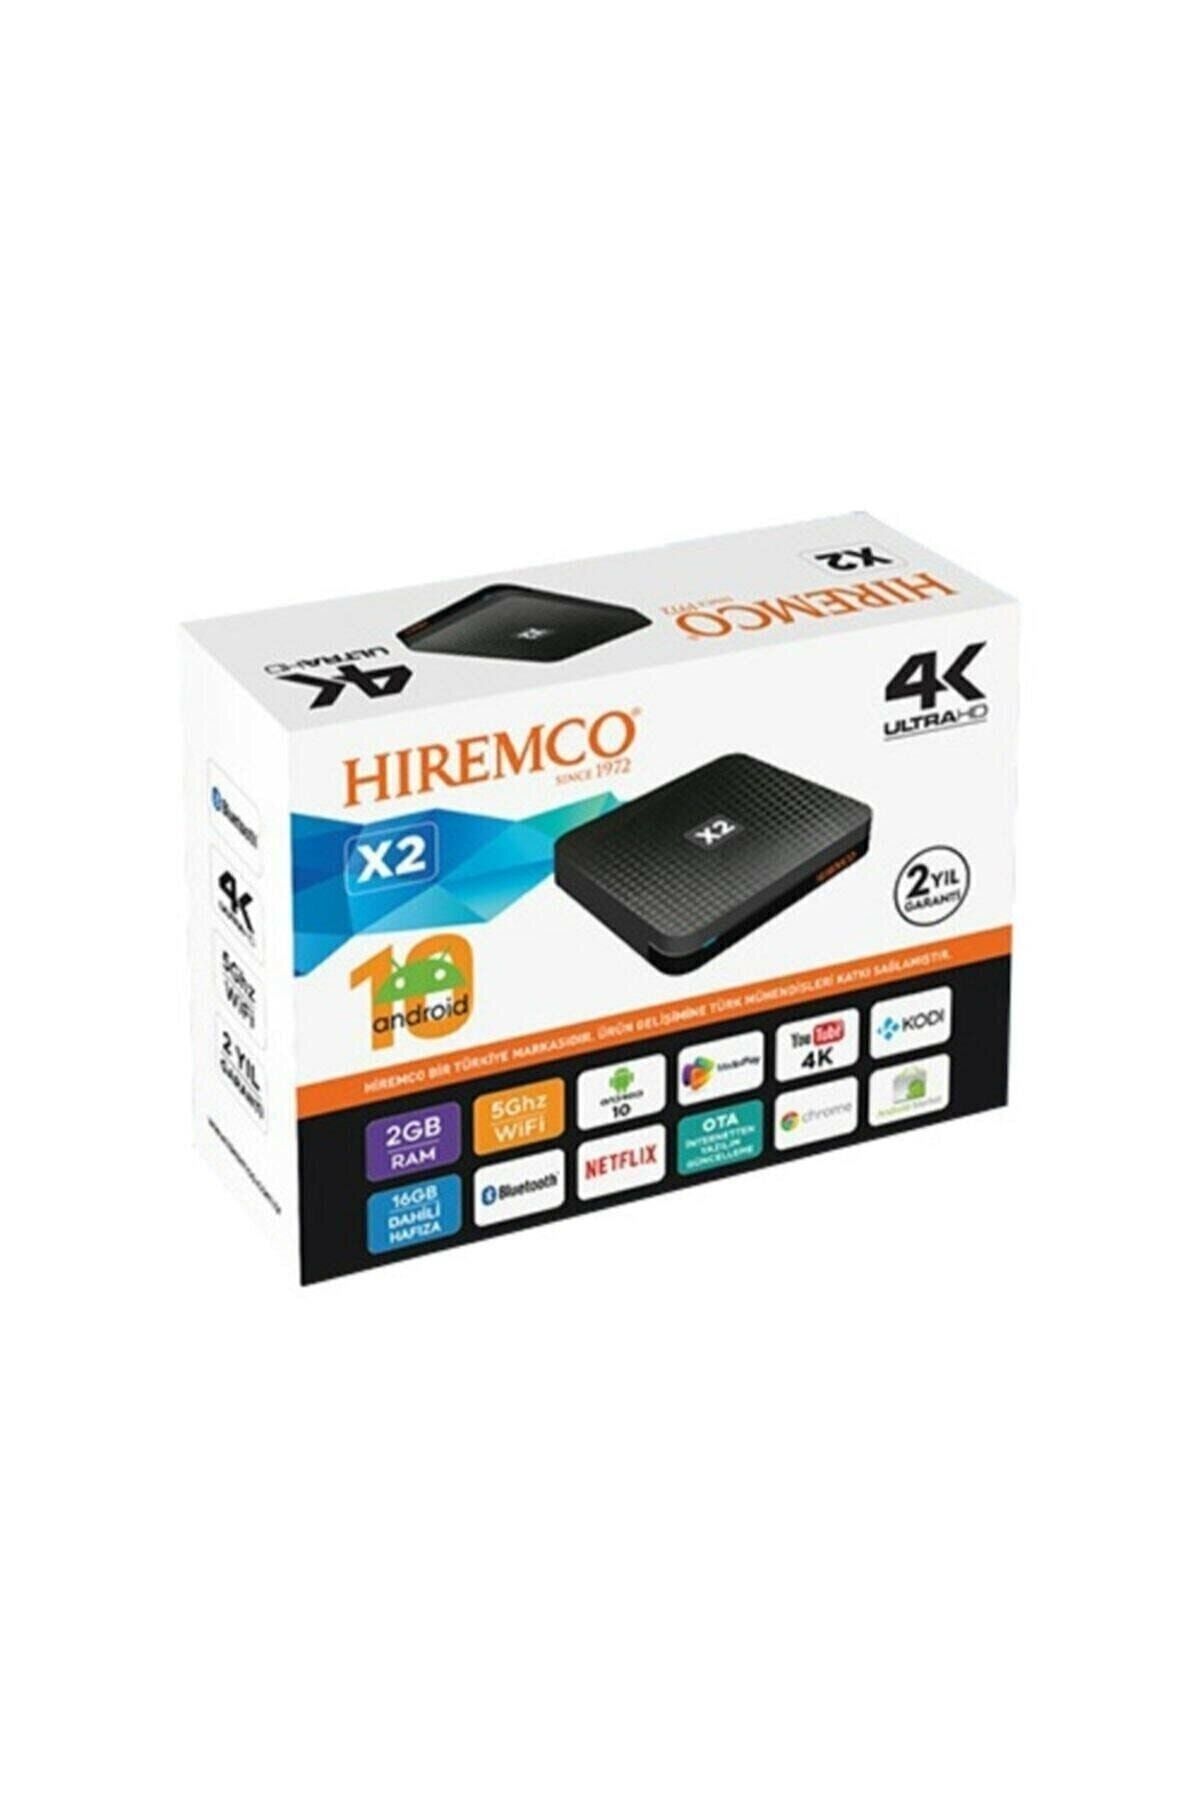 Hiremco Androıd Tv Box 4k - X2 ( Android 10 ) nitro x3